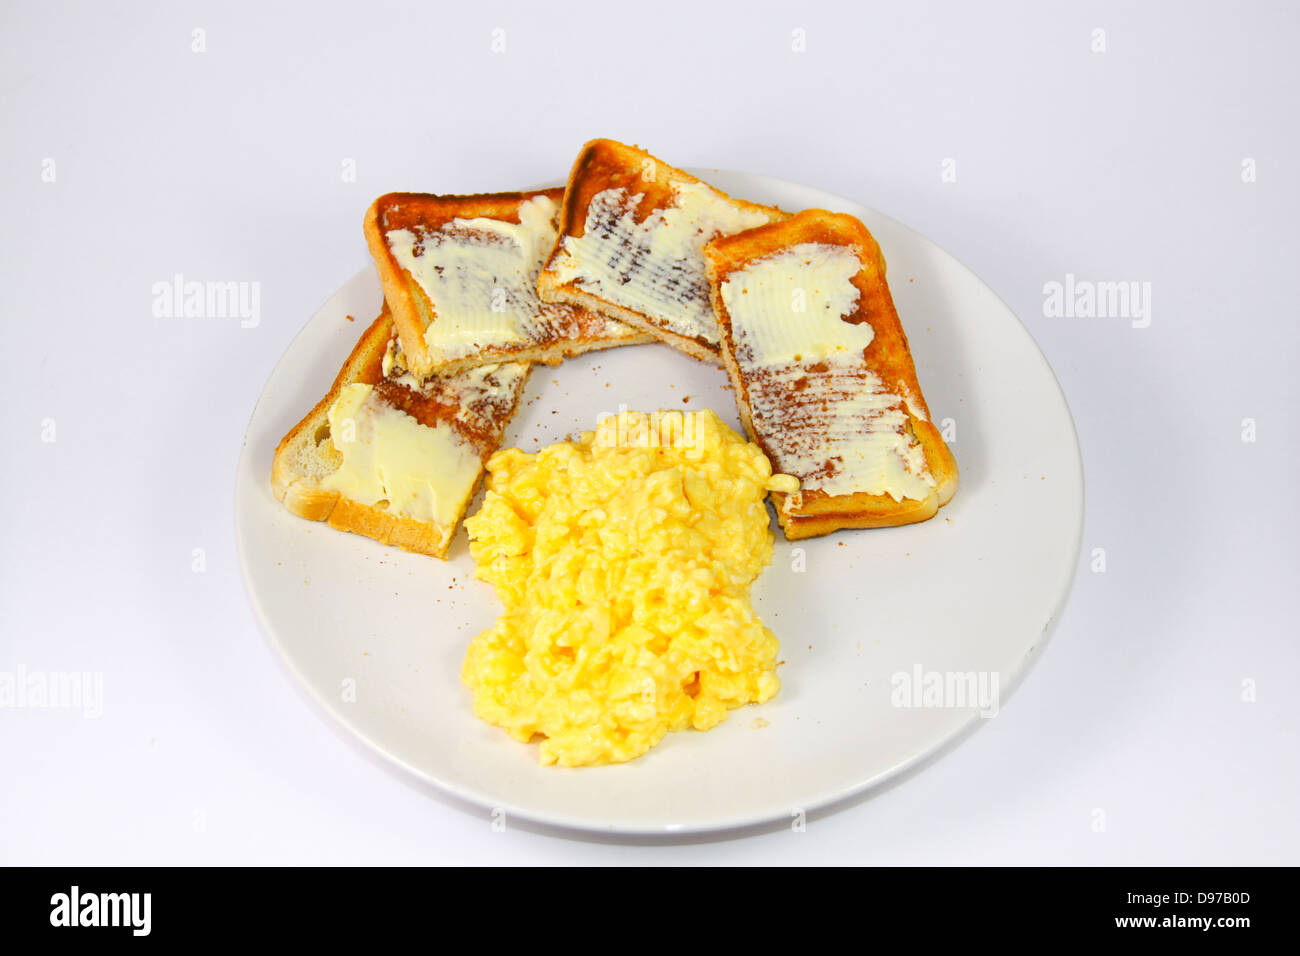 Des œufs brouillés et des tartines on white plate Banque D'Images